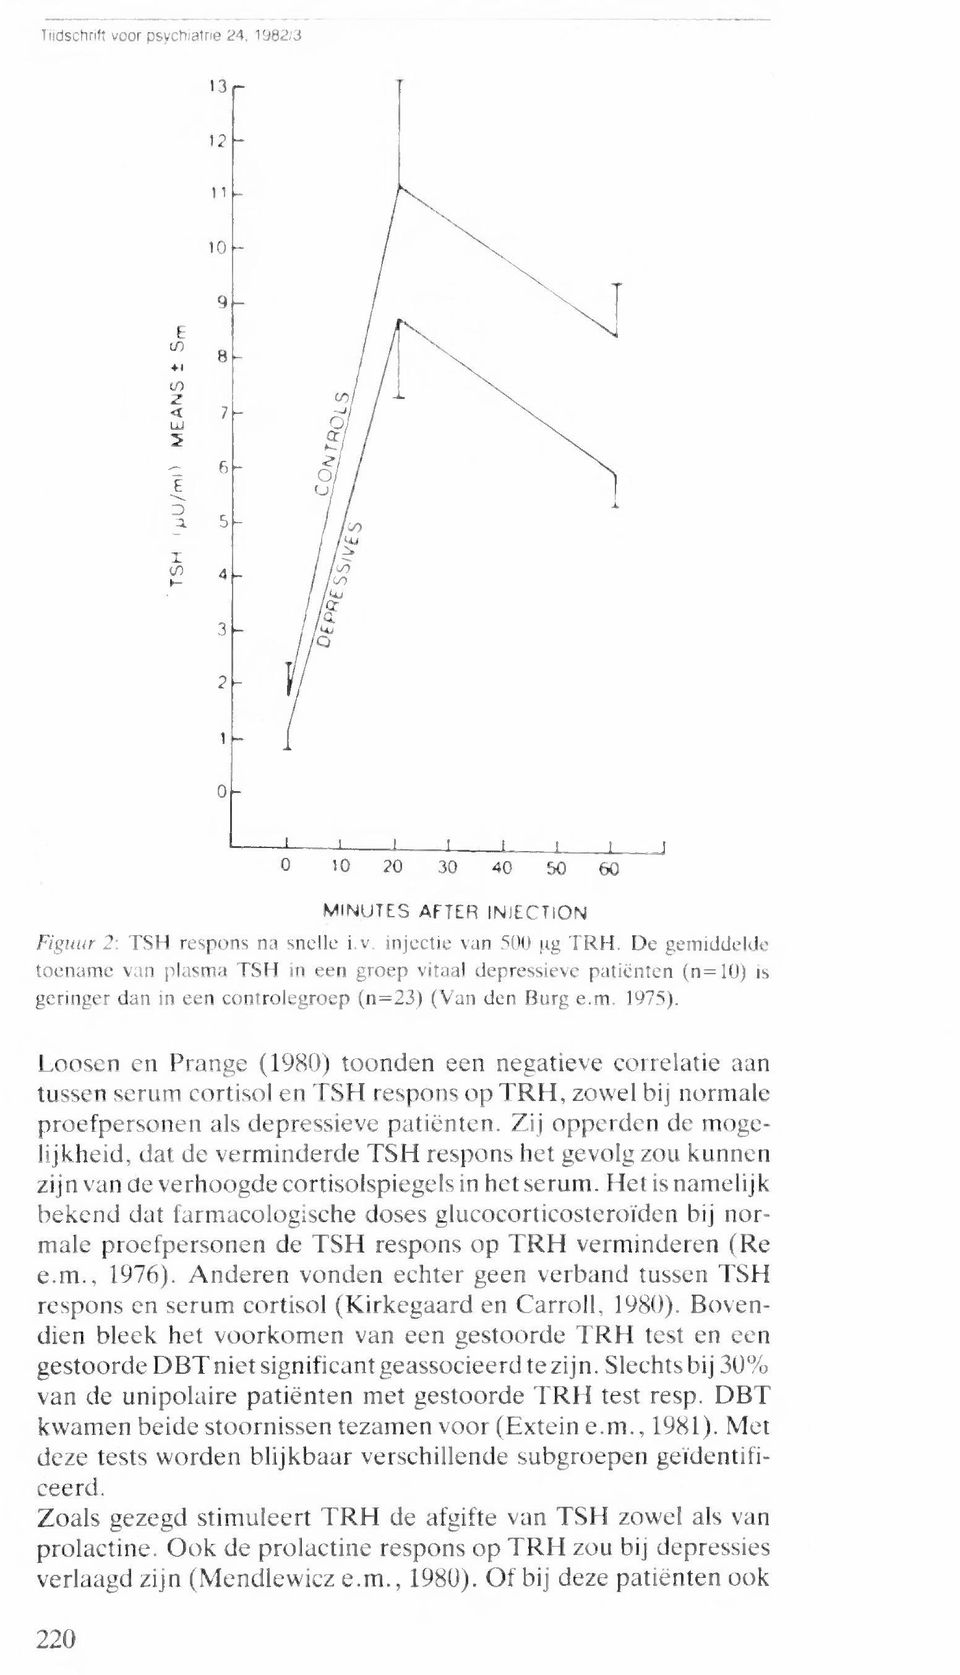 Loosen en Prange (1980) toonden een negatieve correlatie aan tussen serum cortisol en TSH respons op TRH, zowel bij normale proefpersonen als depressieve patiënten.